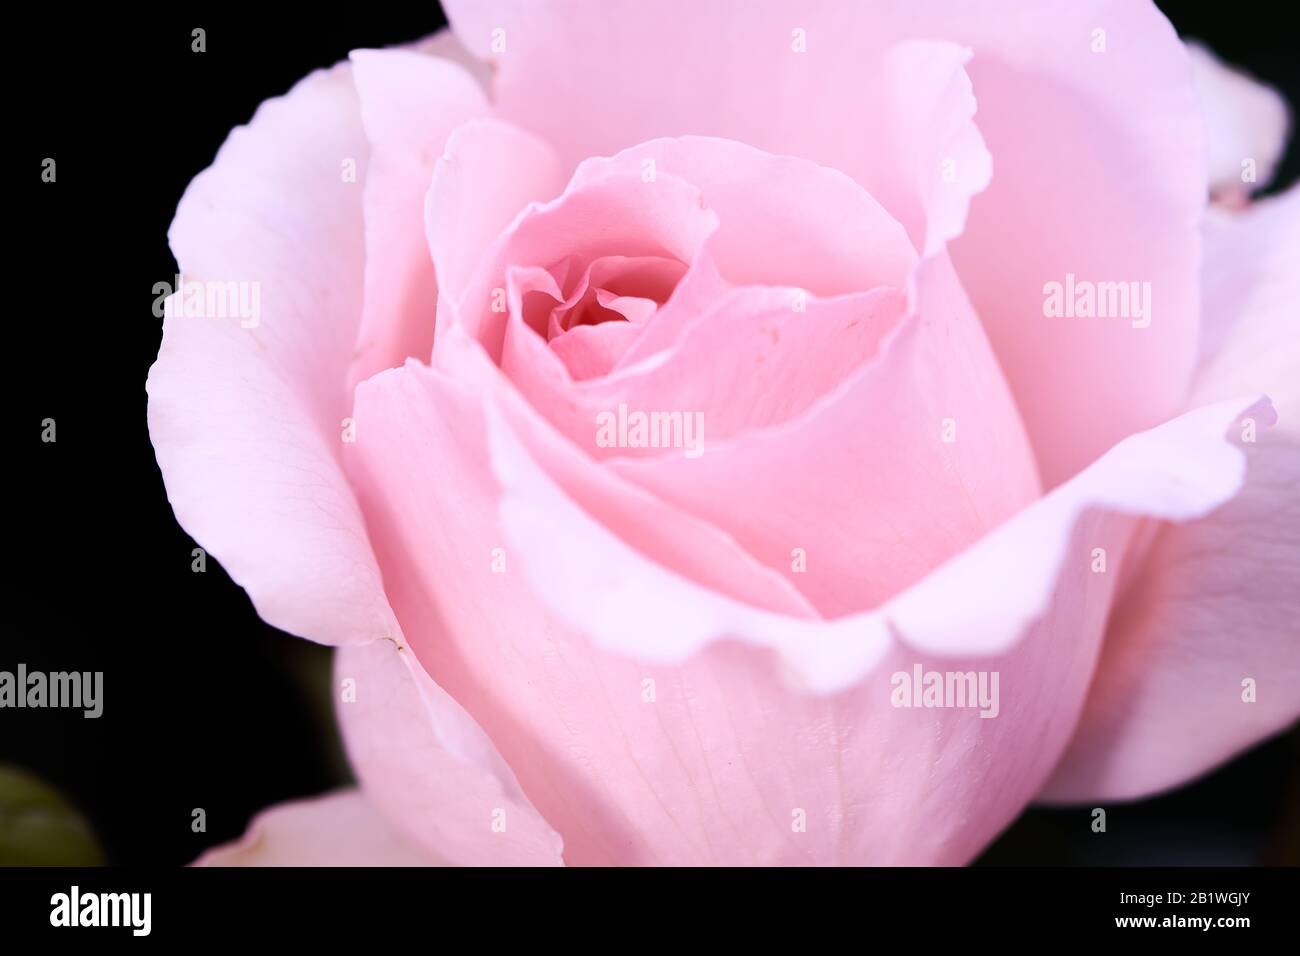 Photo couleur d'une rose vif appelée Andre le notre, foyer au milieu de la rose Banque D'Images